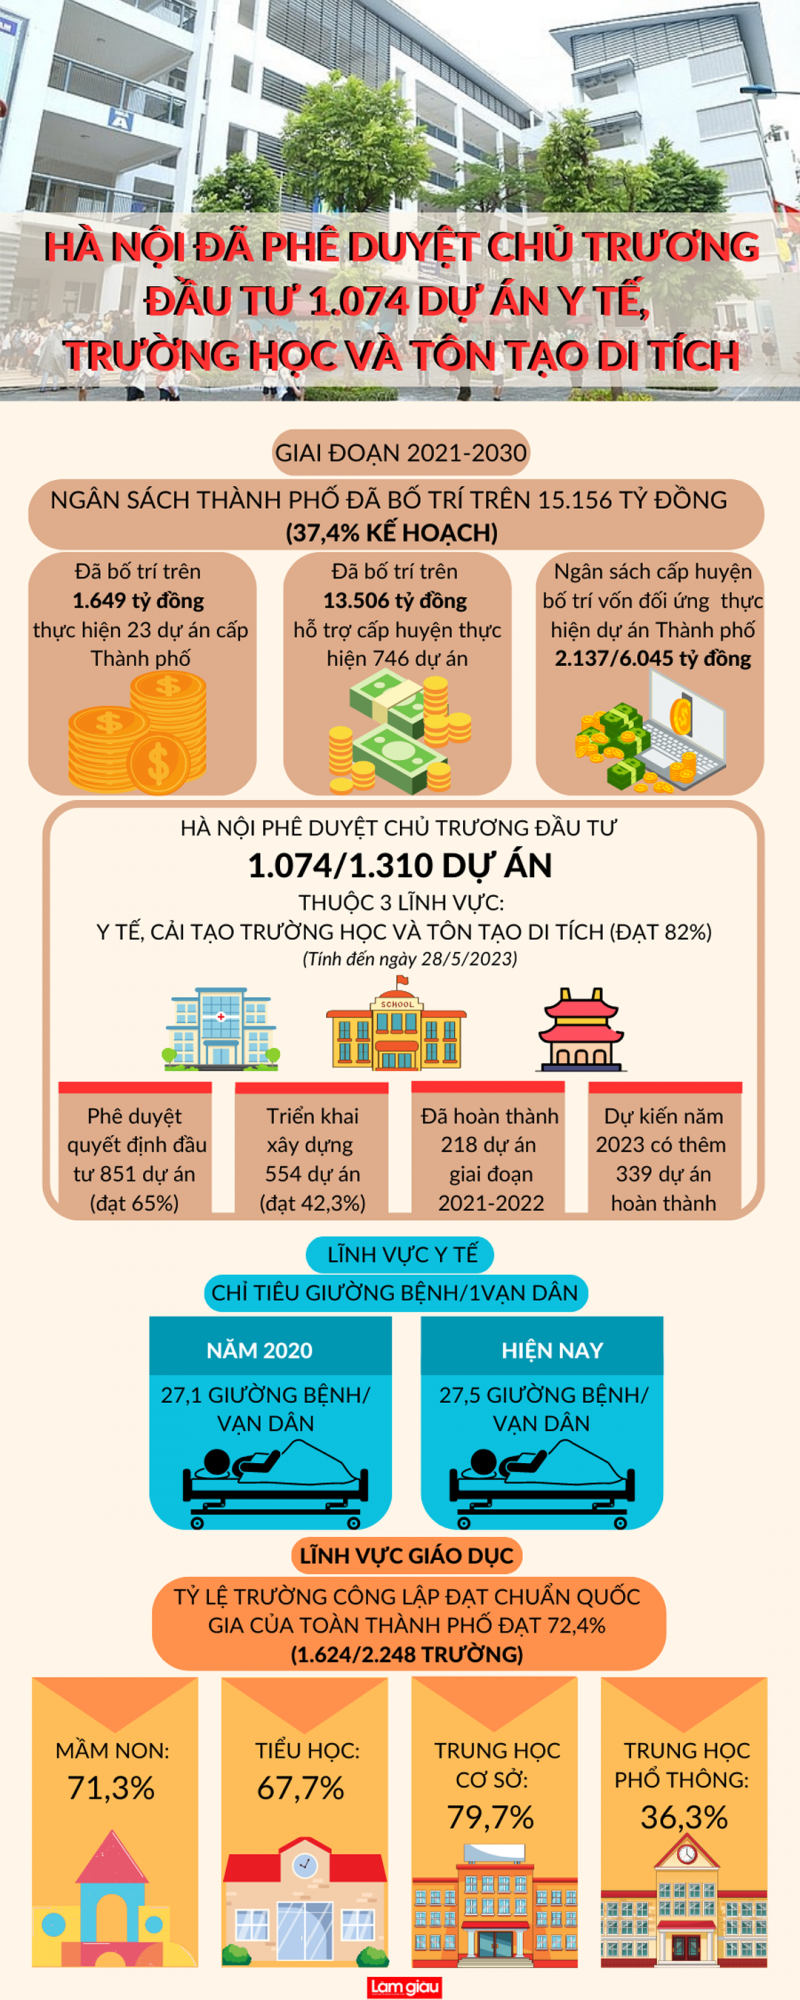 [Infographic]: Hà Nội phê duyệt chủ trương đầu tư trên 1.000 dự án y tế, trường học và tôn tạo di tích